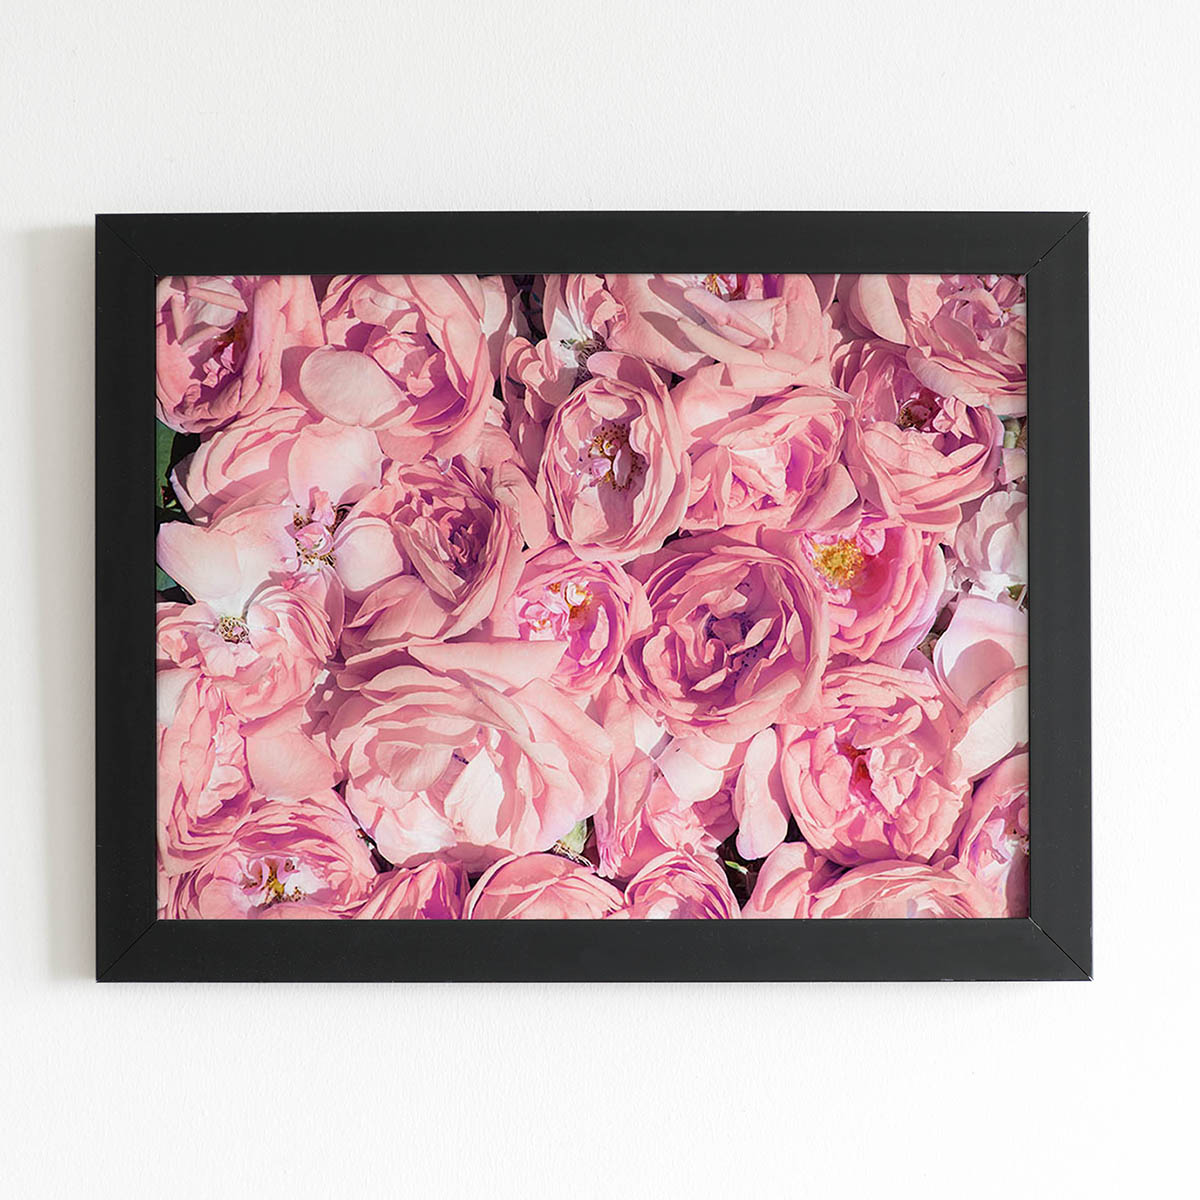 Quadro Rosas Flores Tons de Rosa Moldura Preta 60x40cm 